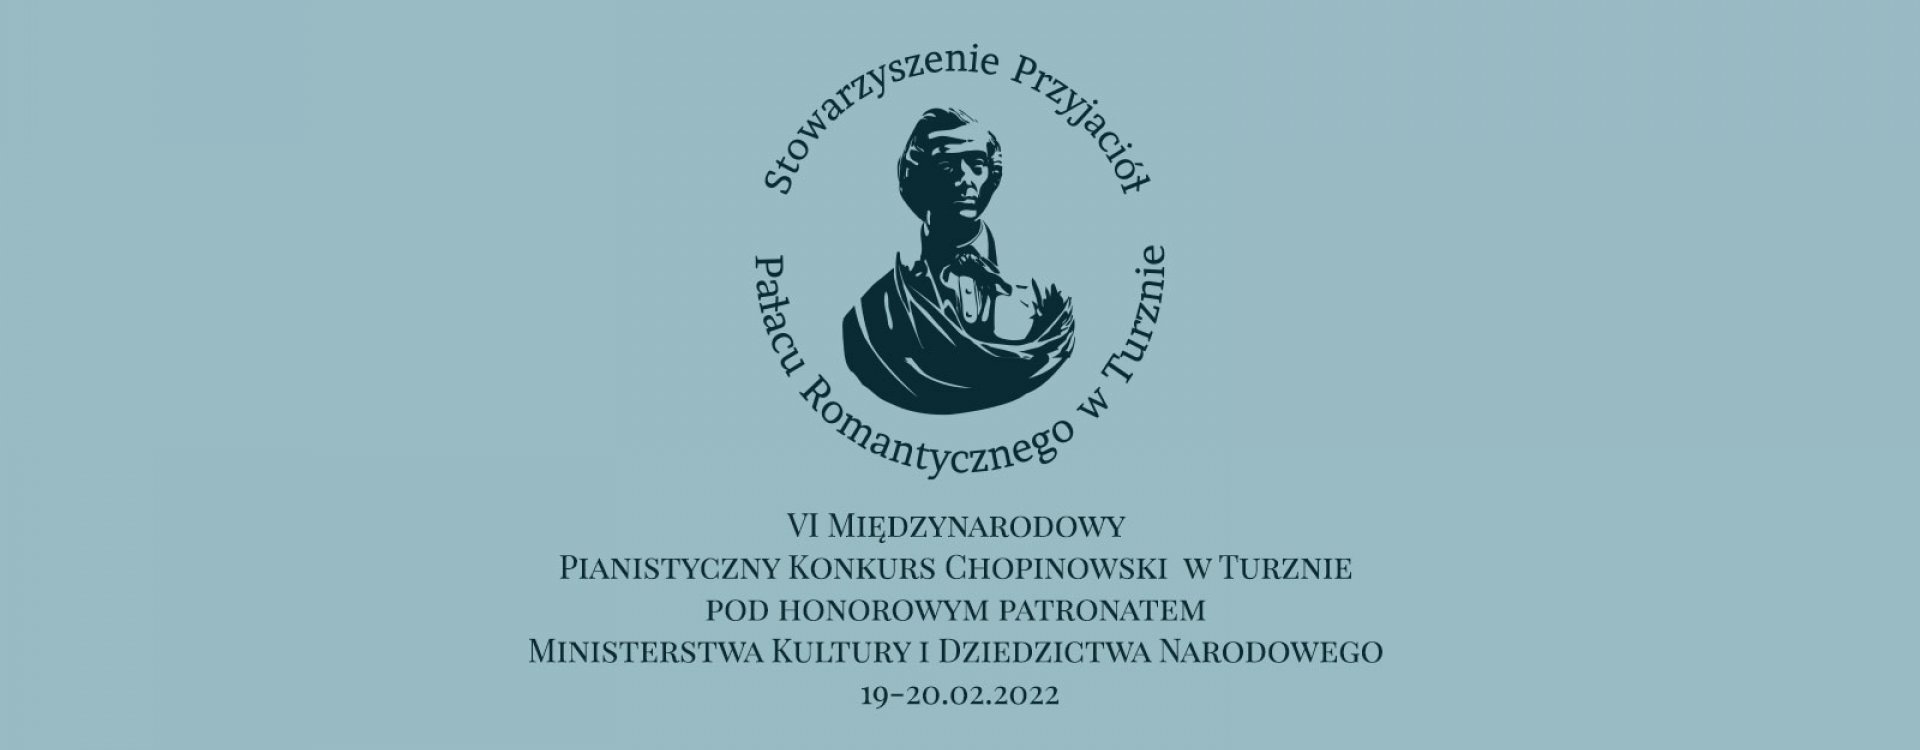 VI Międzynarodowy Pianistyczny Konkurs Chopinowski w Turznie pod honorowym patronatem Ministerstwa Kultury i Dziedzictwa Narodowego        19-20.02.2022